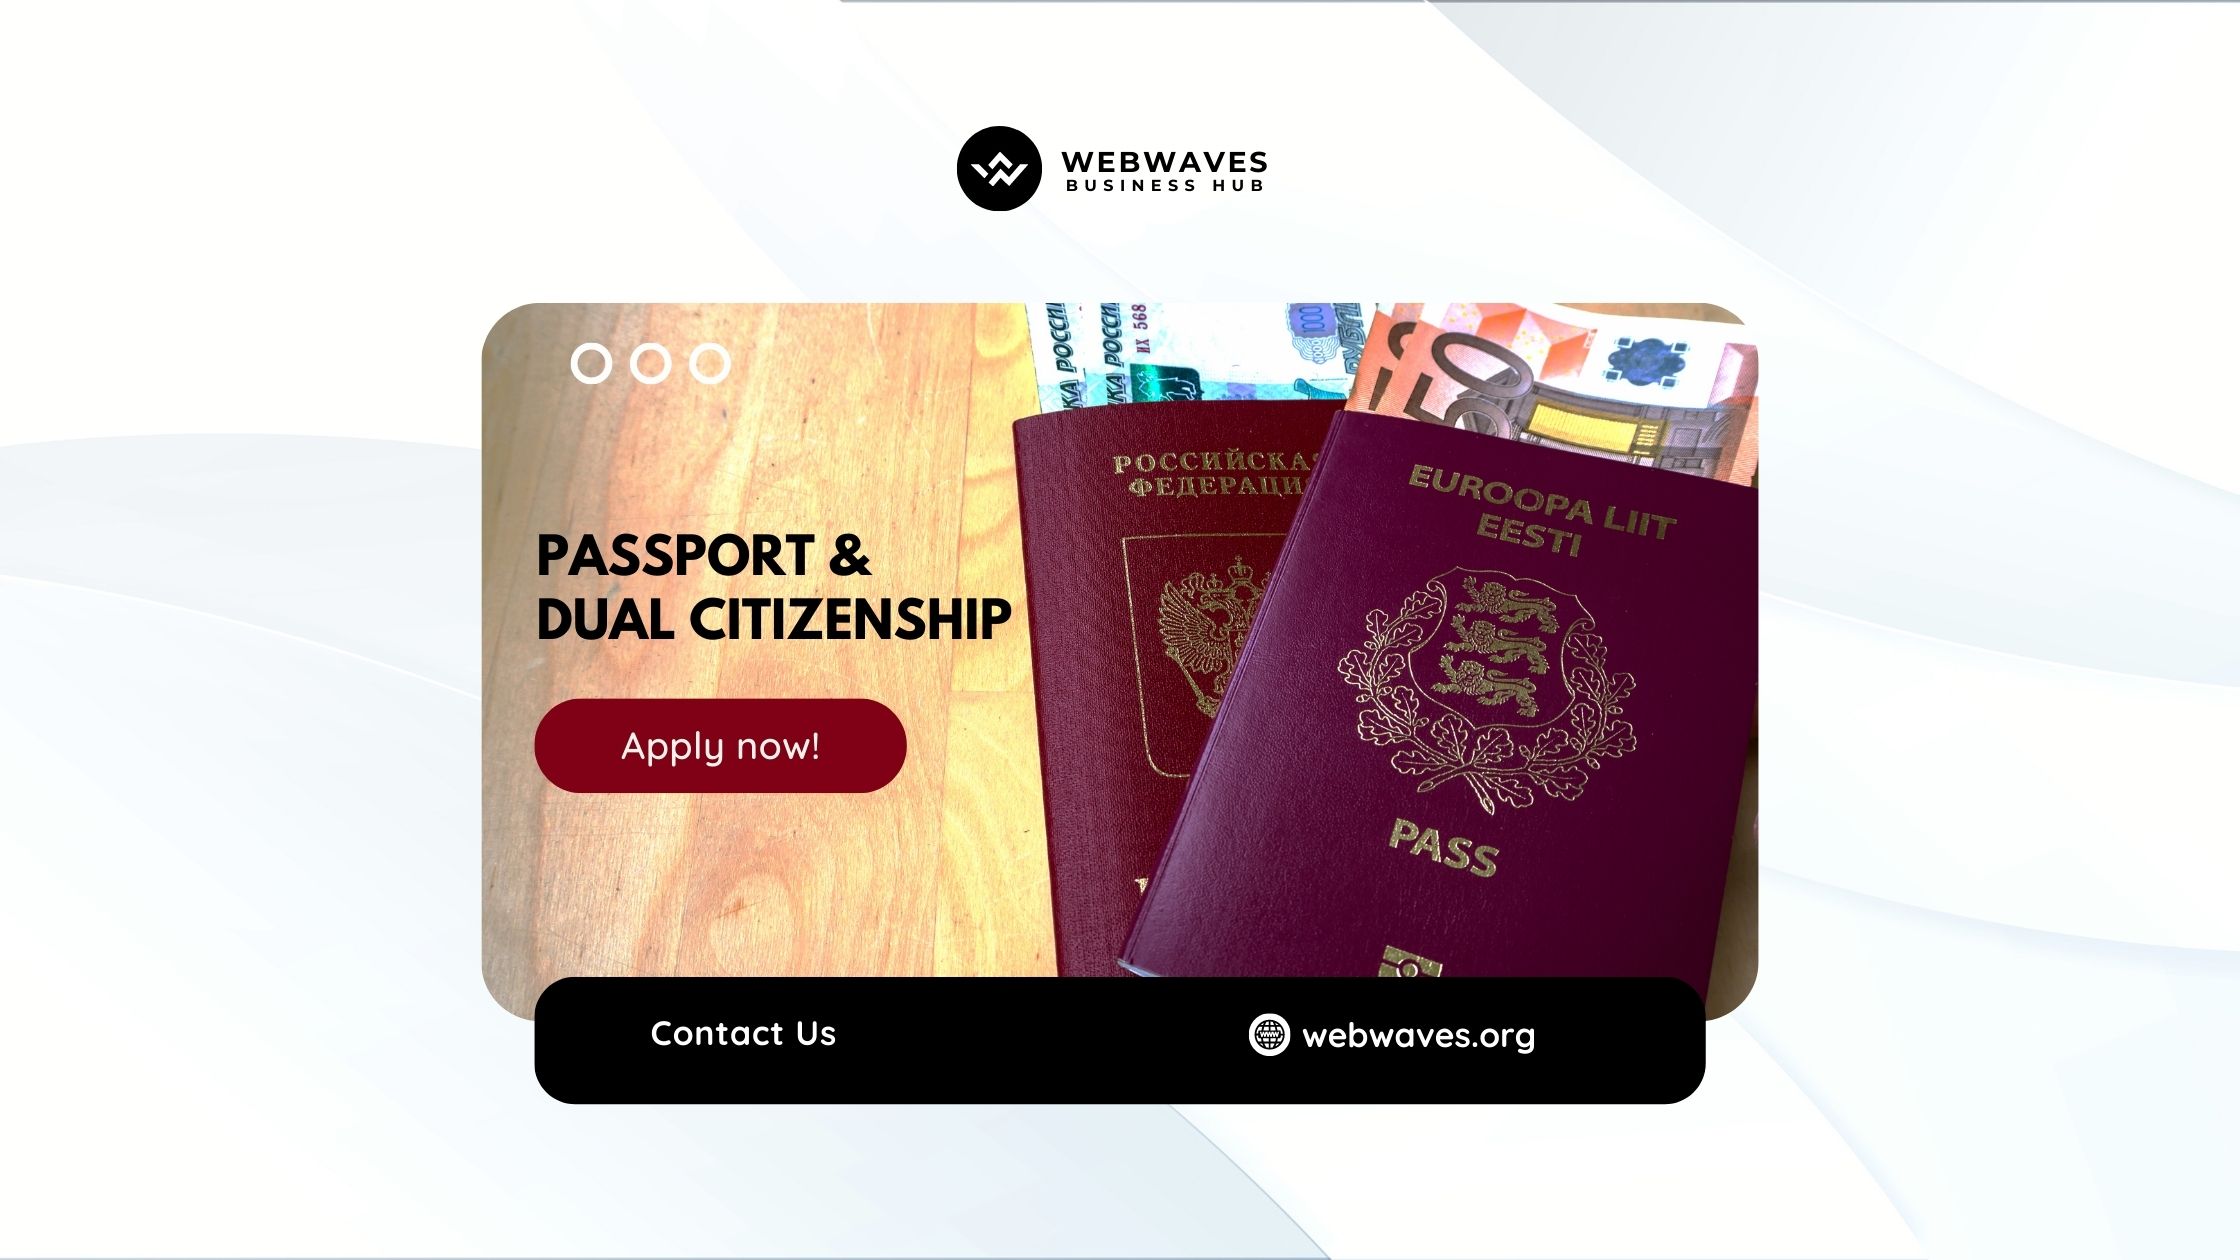 Passport & Dual Citizenship